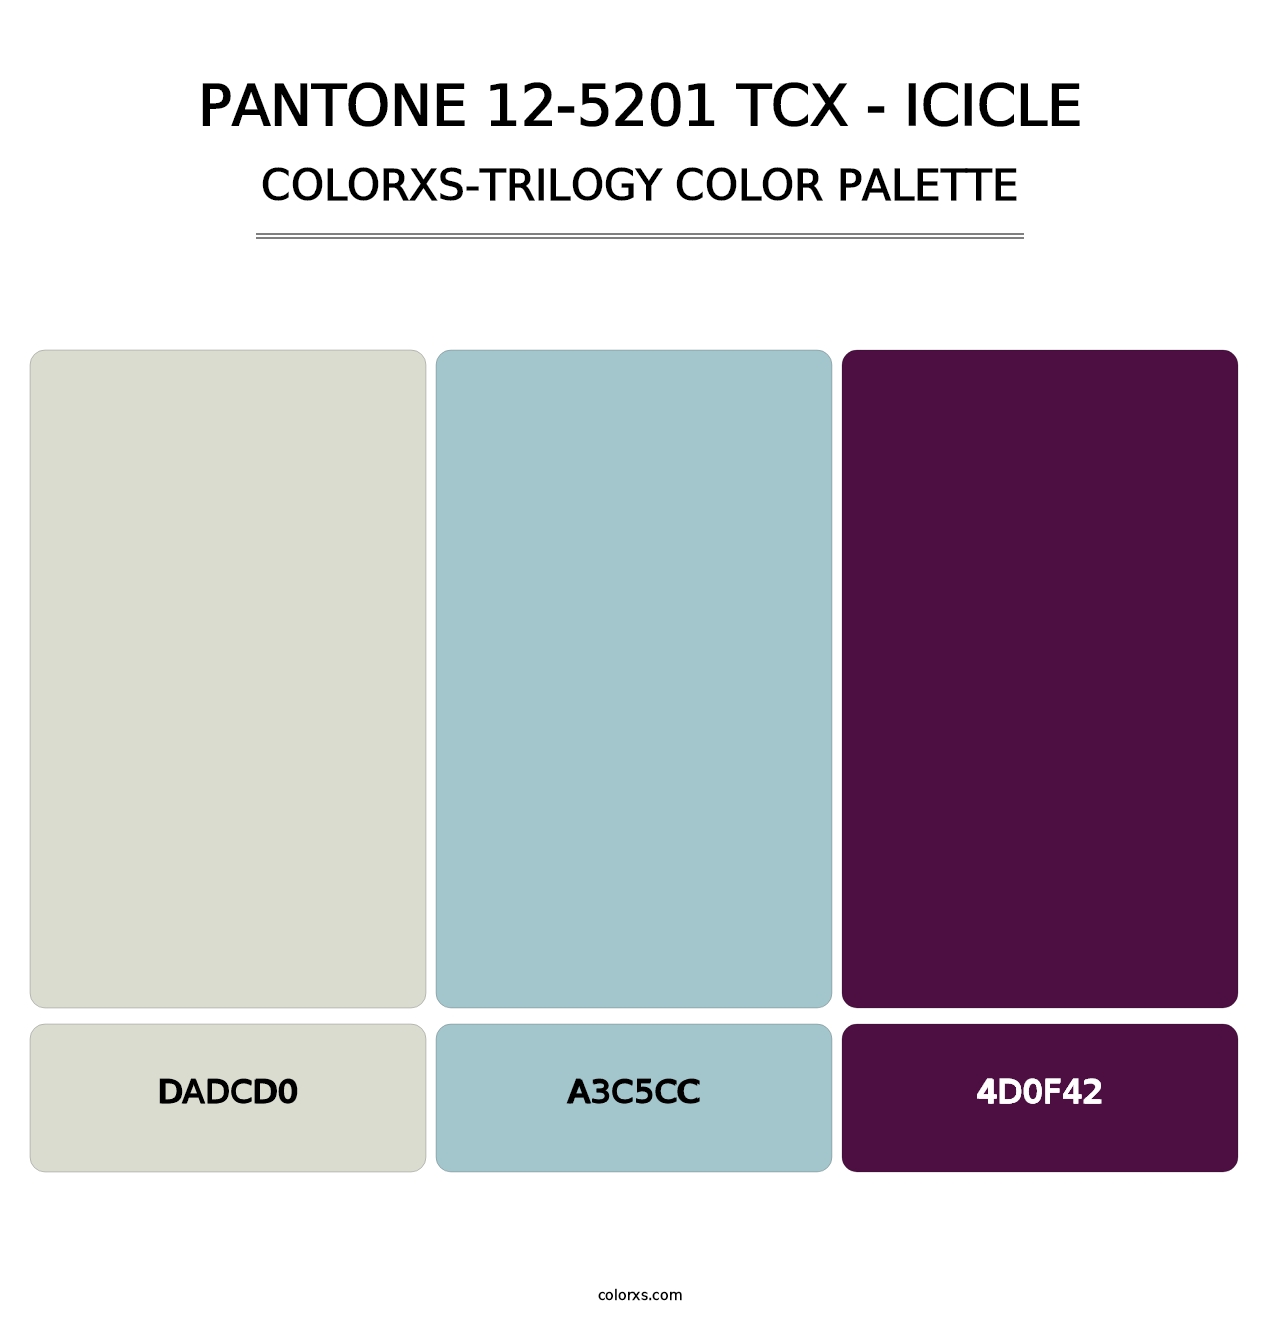 PANTONE 12-5201 TCX - Icicle - Colorxs Trilogy Palette